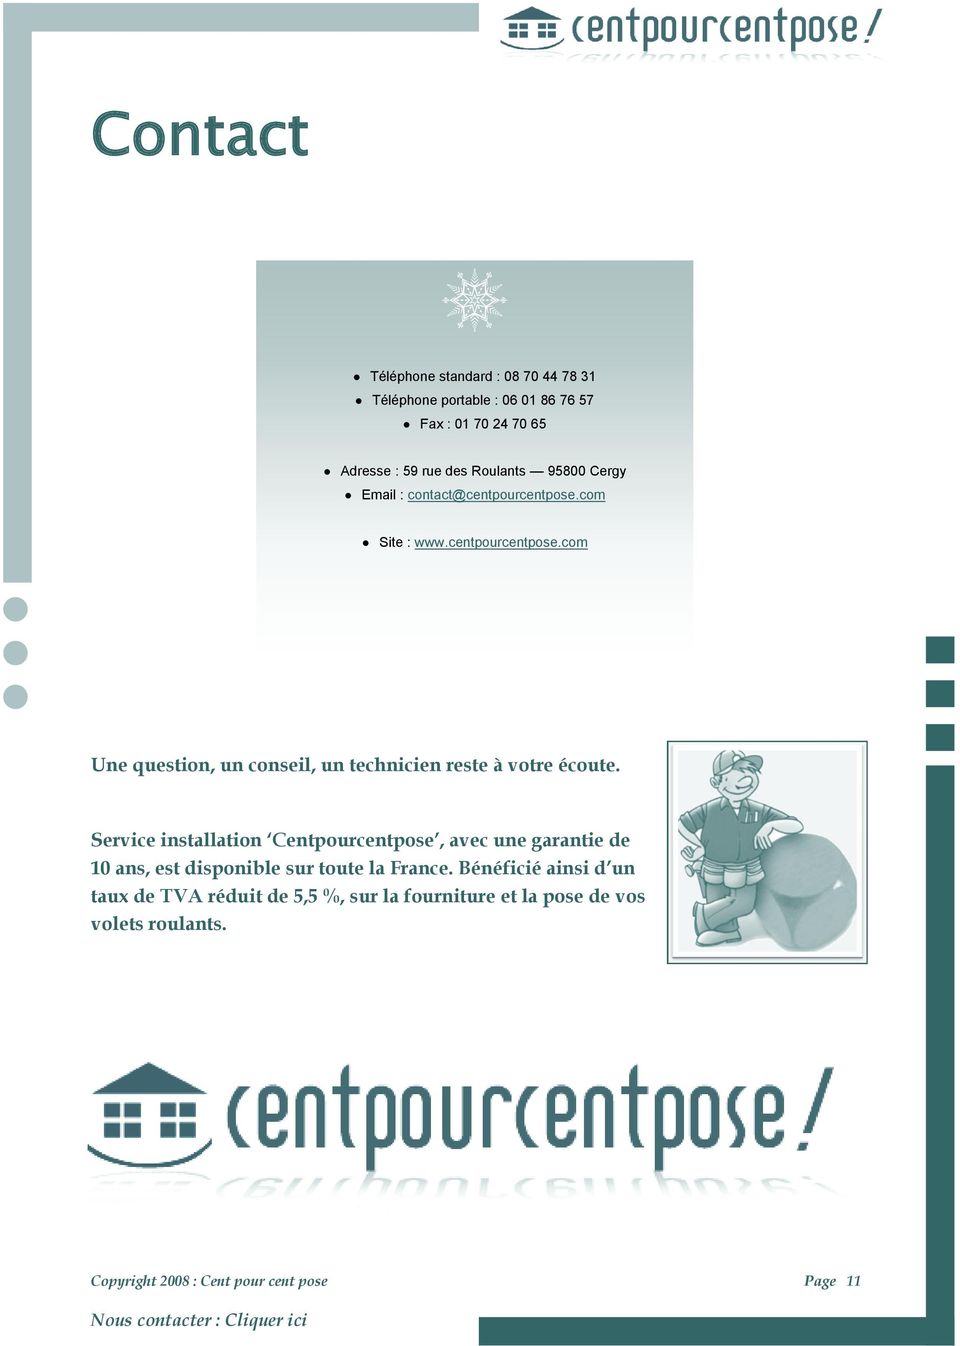 Service installation Centpourcentpose, avec une garantie de 10 ans, est disponible sur toute la France.